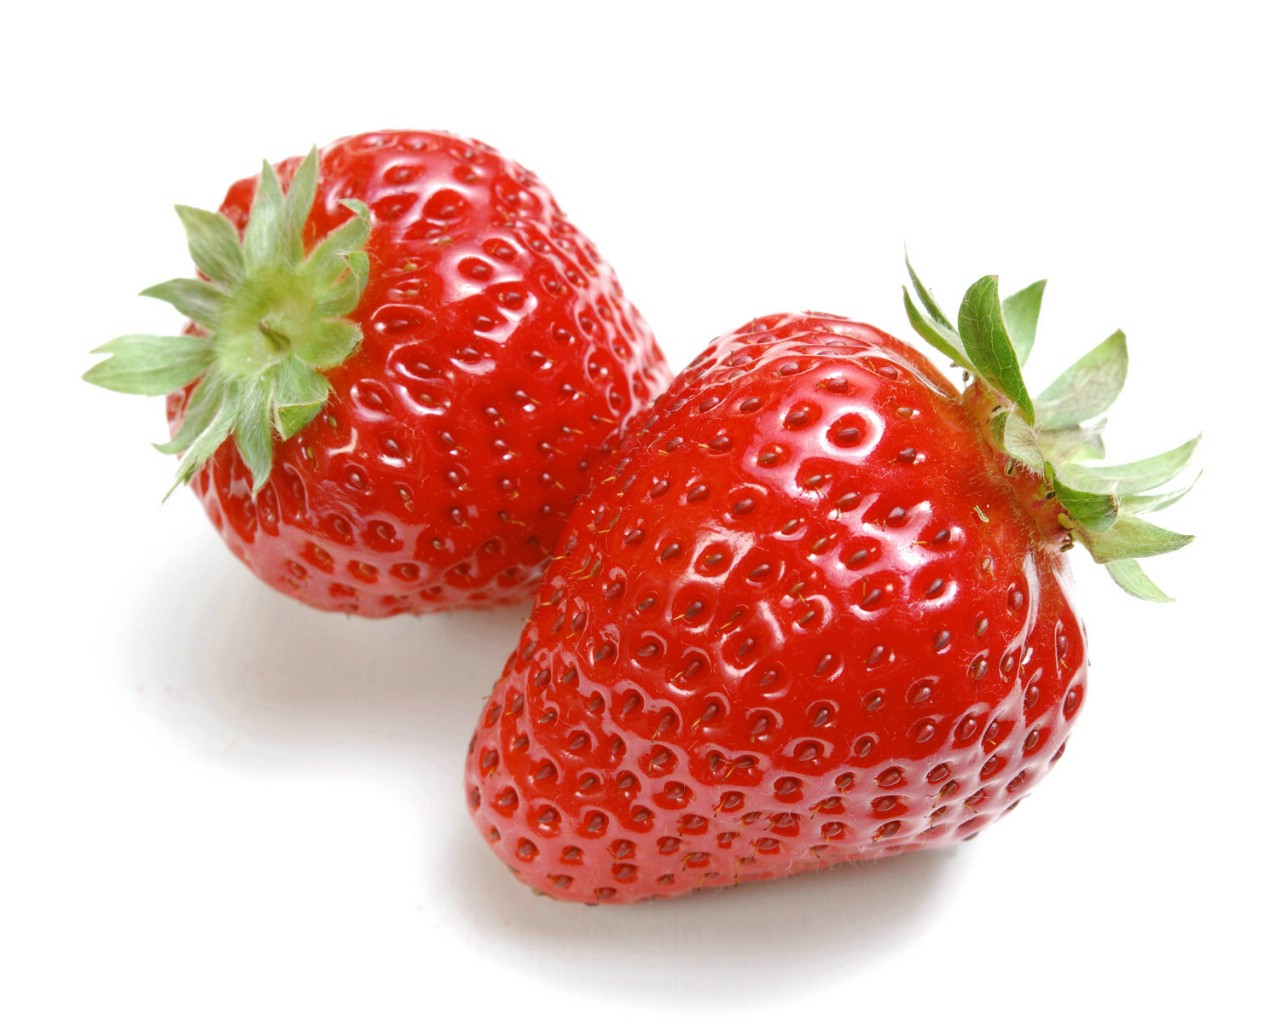 空心草莓是打了激素？“个大”的草莓是因为打了药？解答来了 · 科普中国网